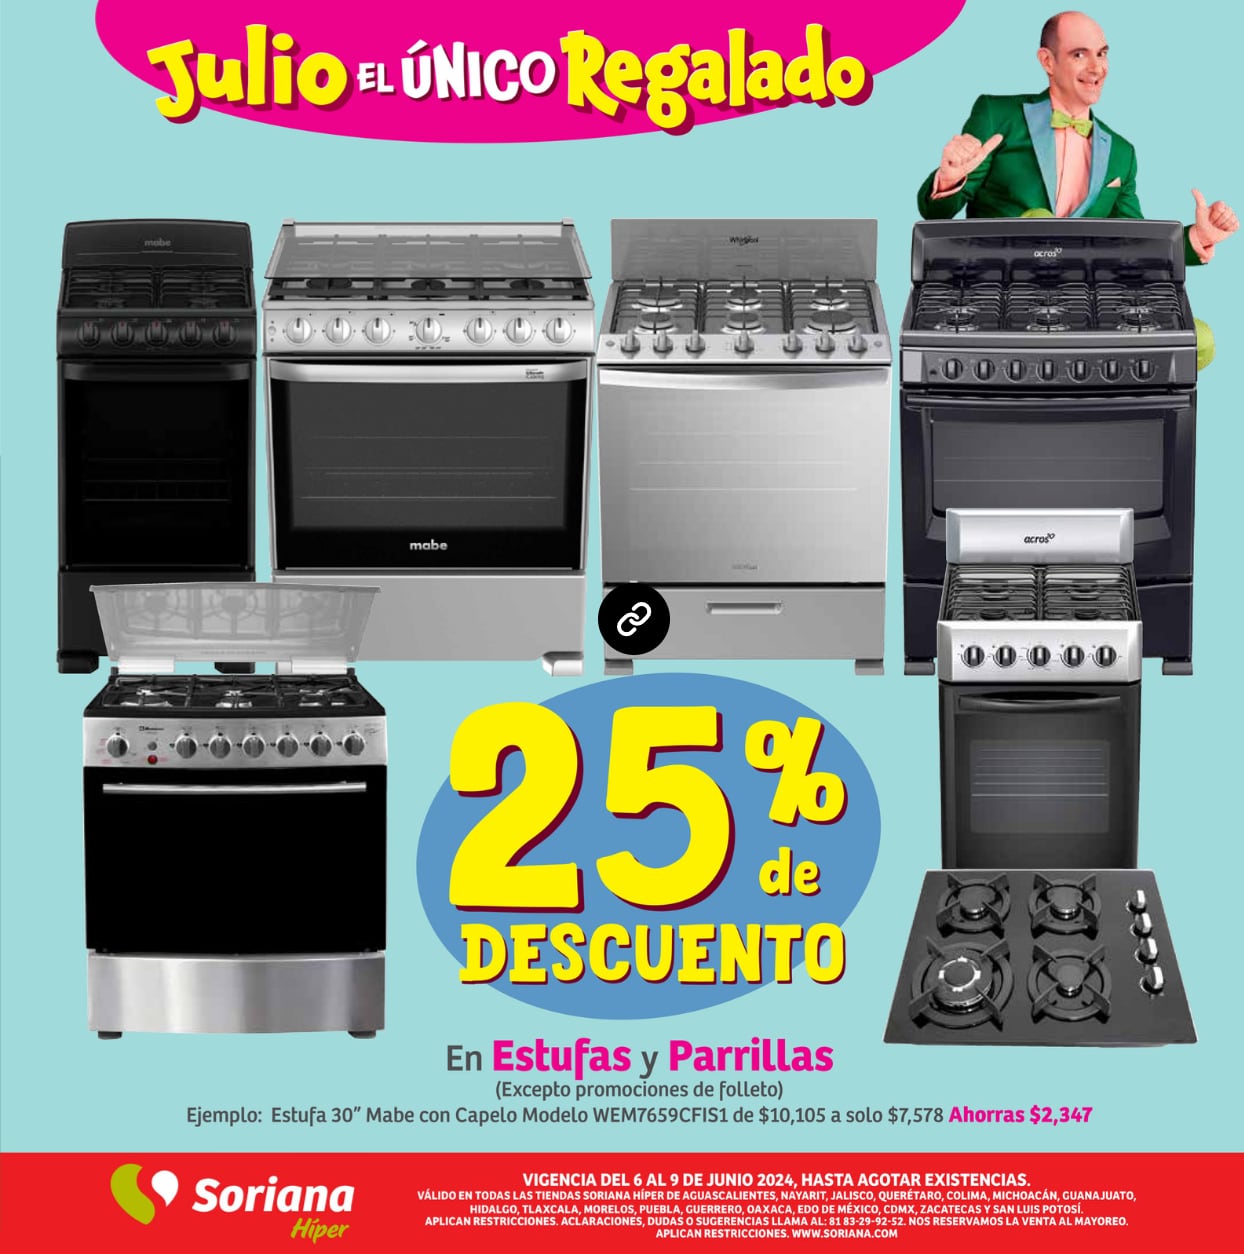 25% de descuento en estufas y parrillas en las ofertas de Soriana fin de semana